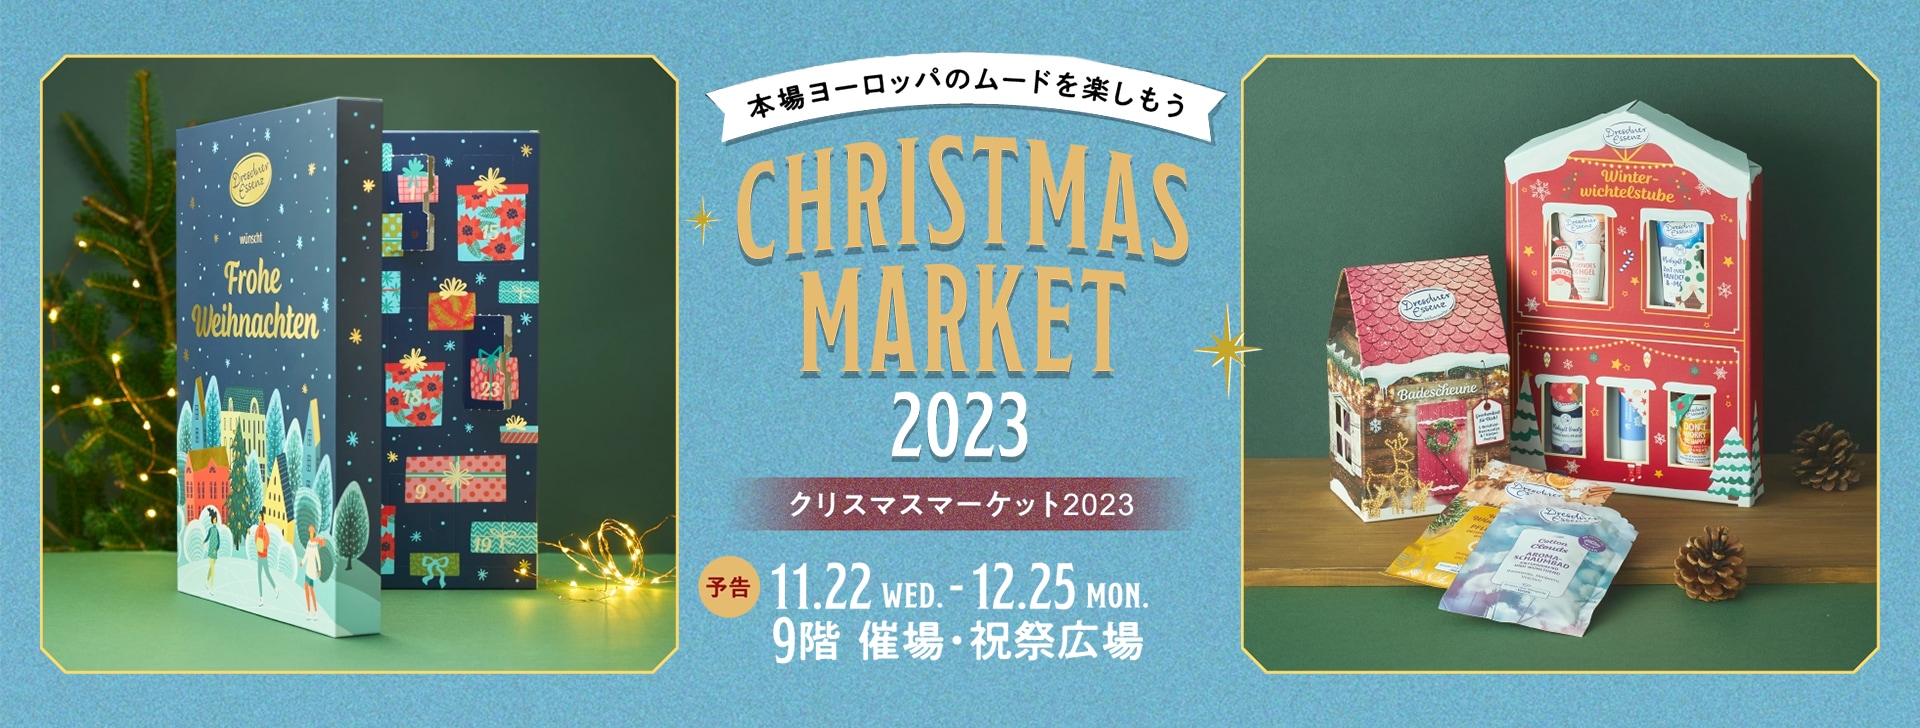 クリスマスマーケット2023